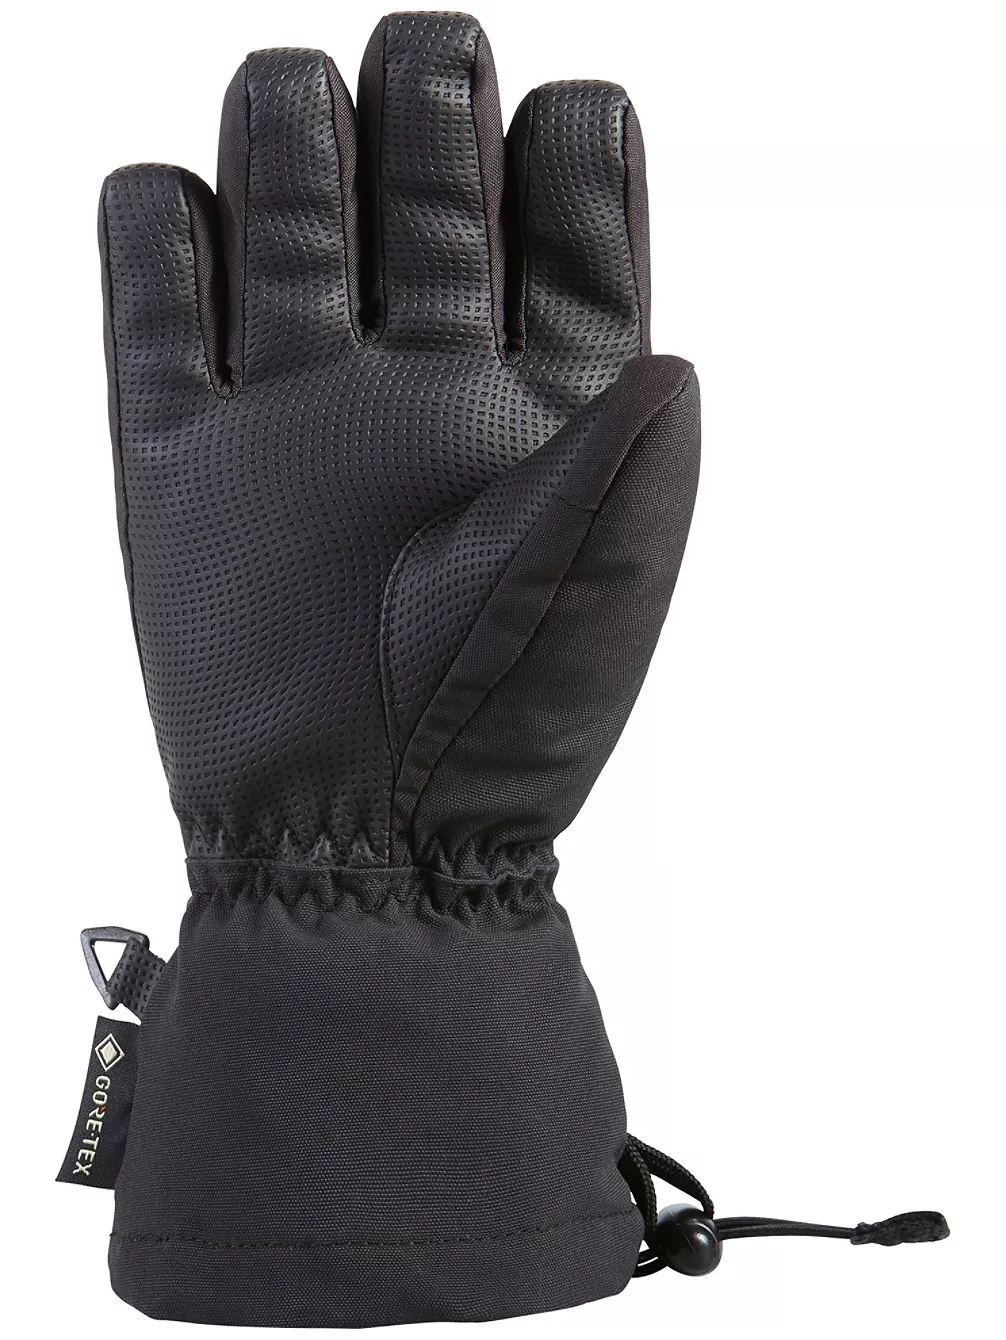 Dakine Avenger Gore-tex kinder handschoenen black